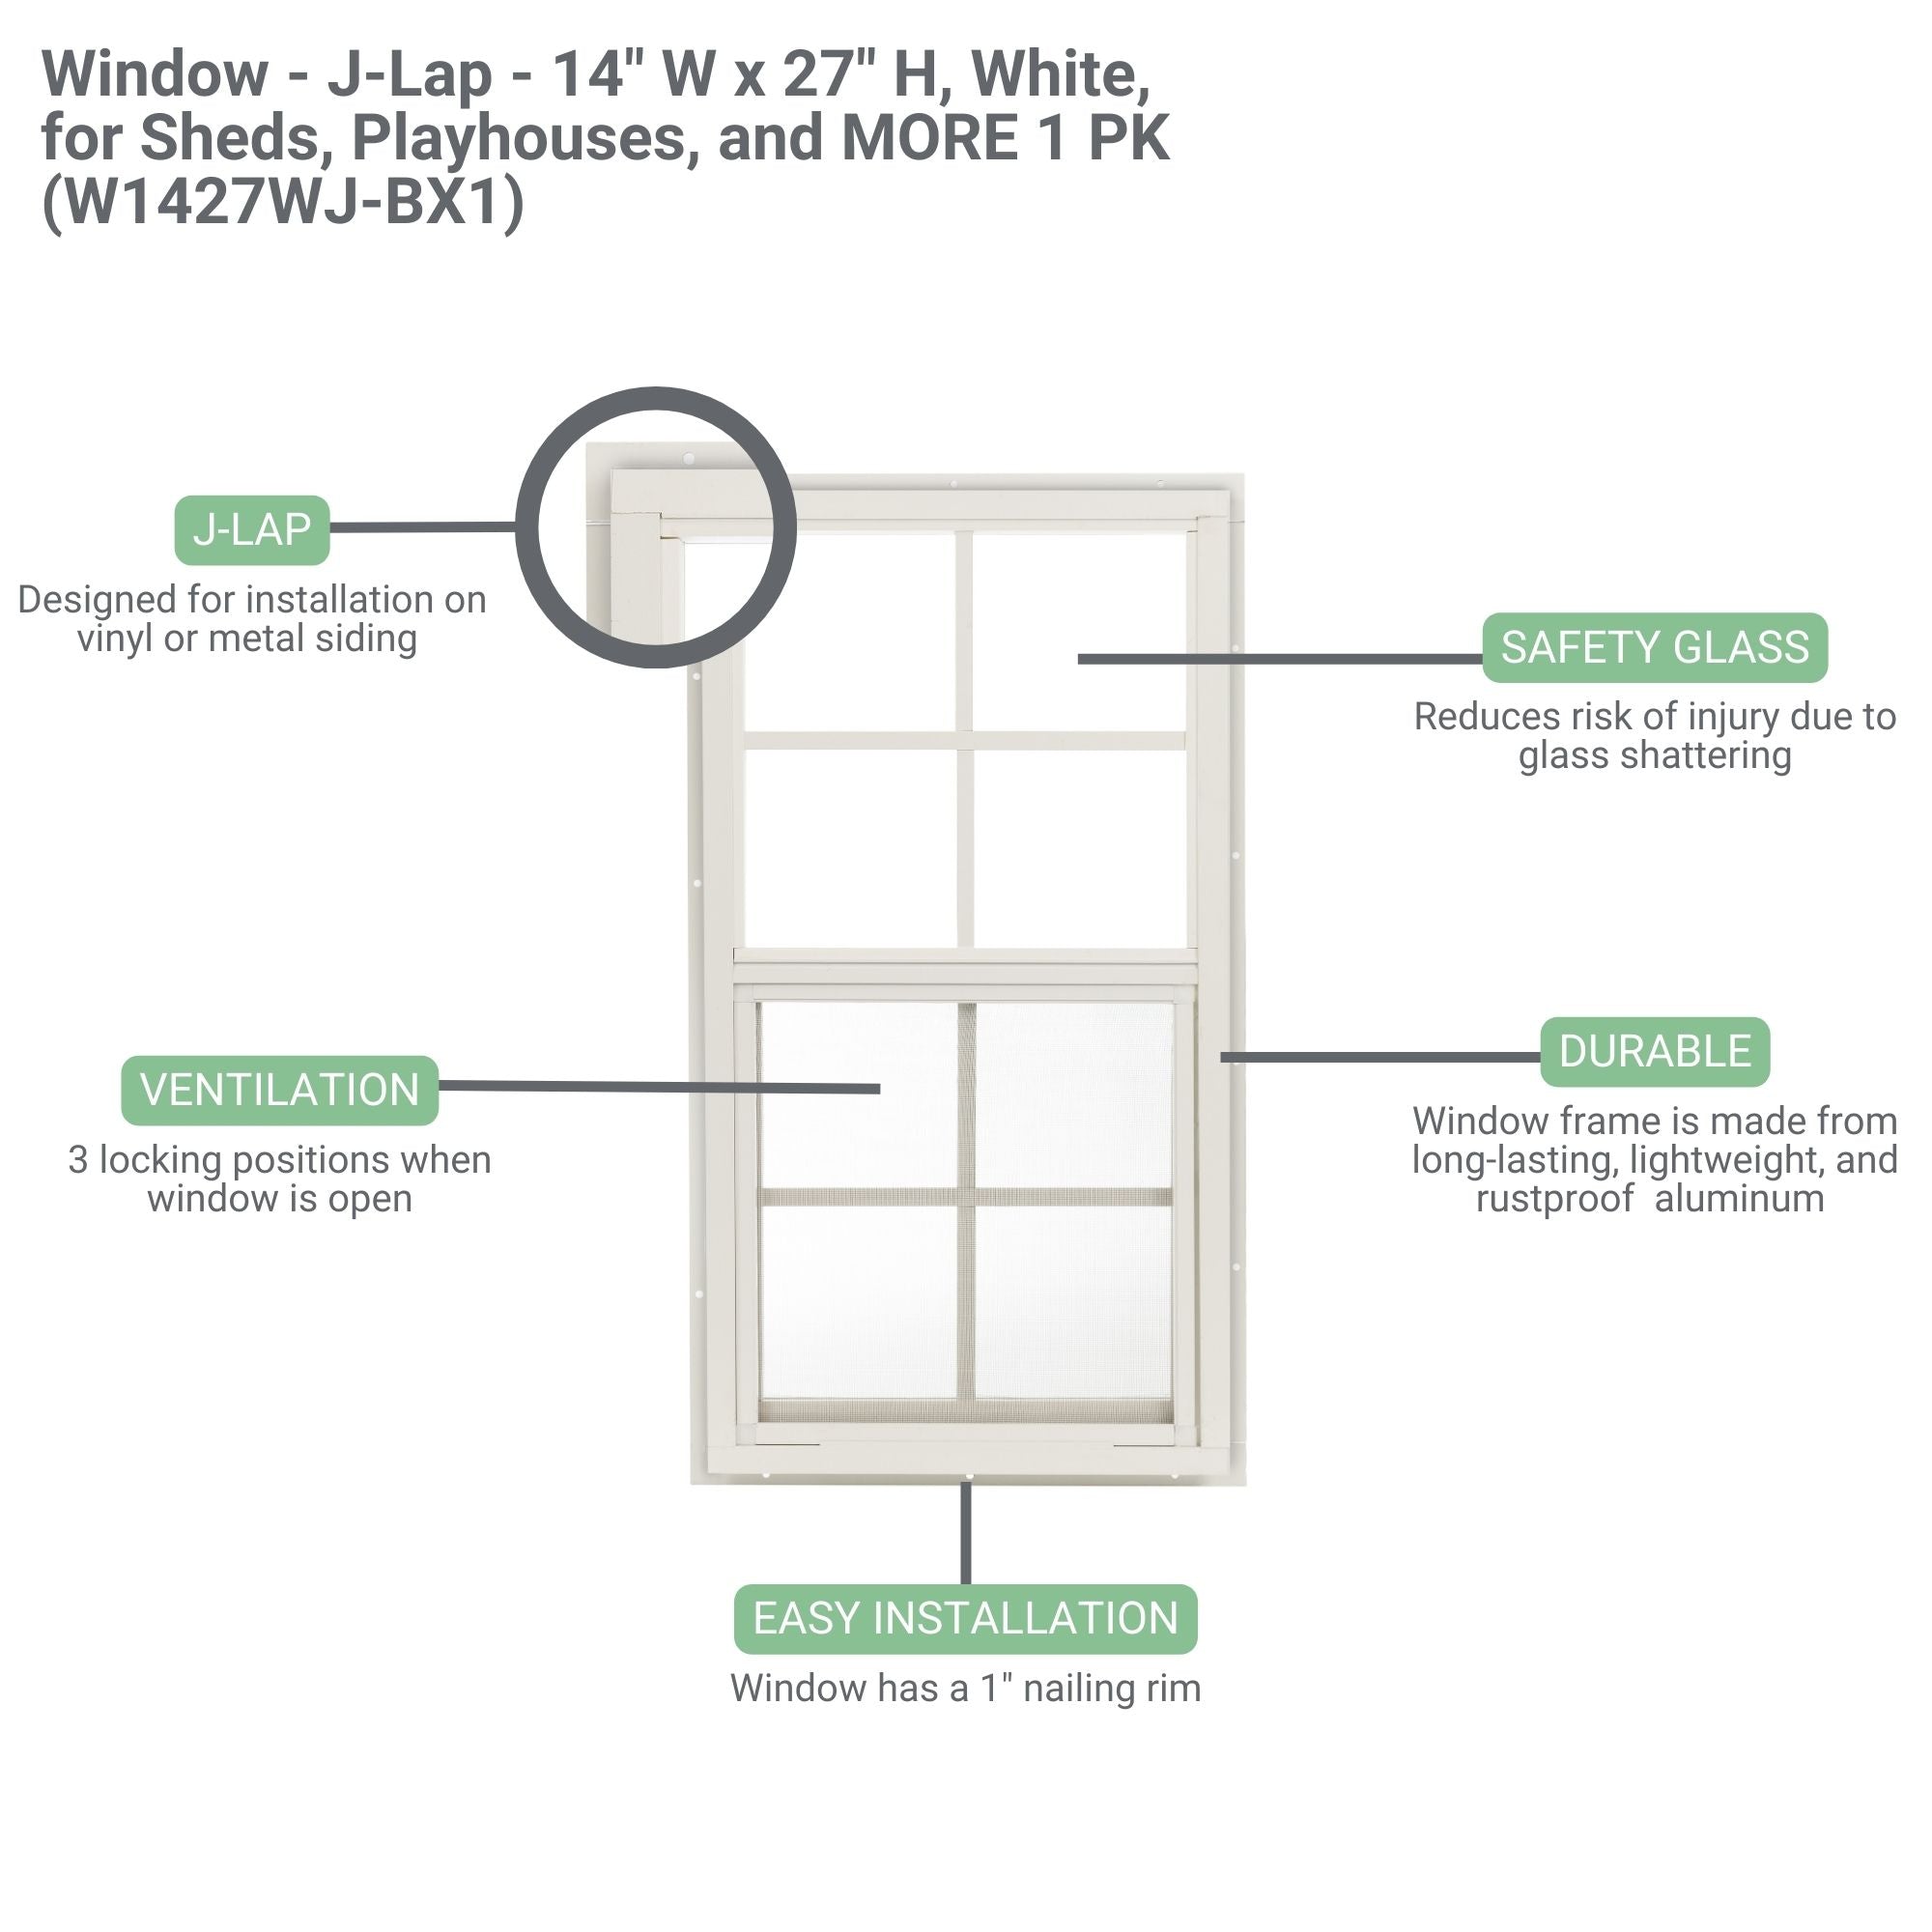 14" W x 27" H J-Lap Shed Window, 1 PK